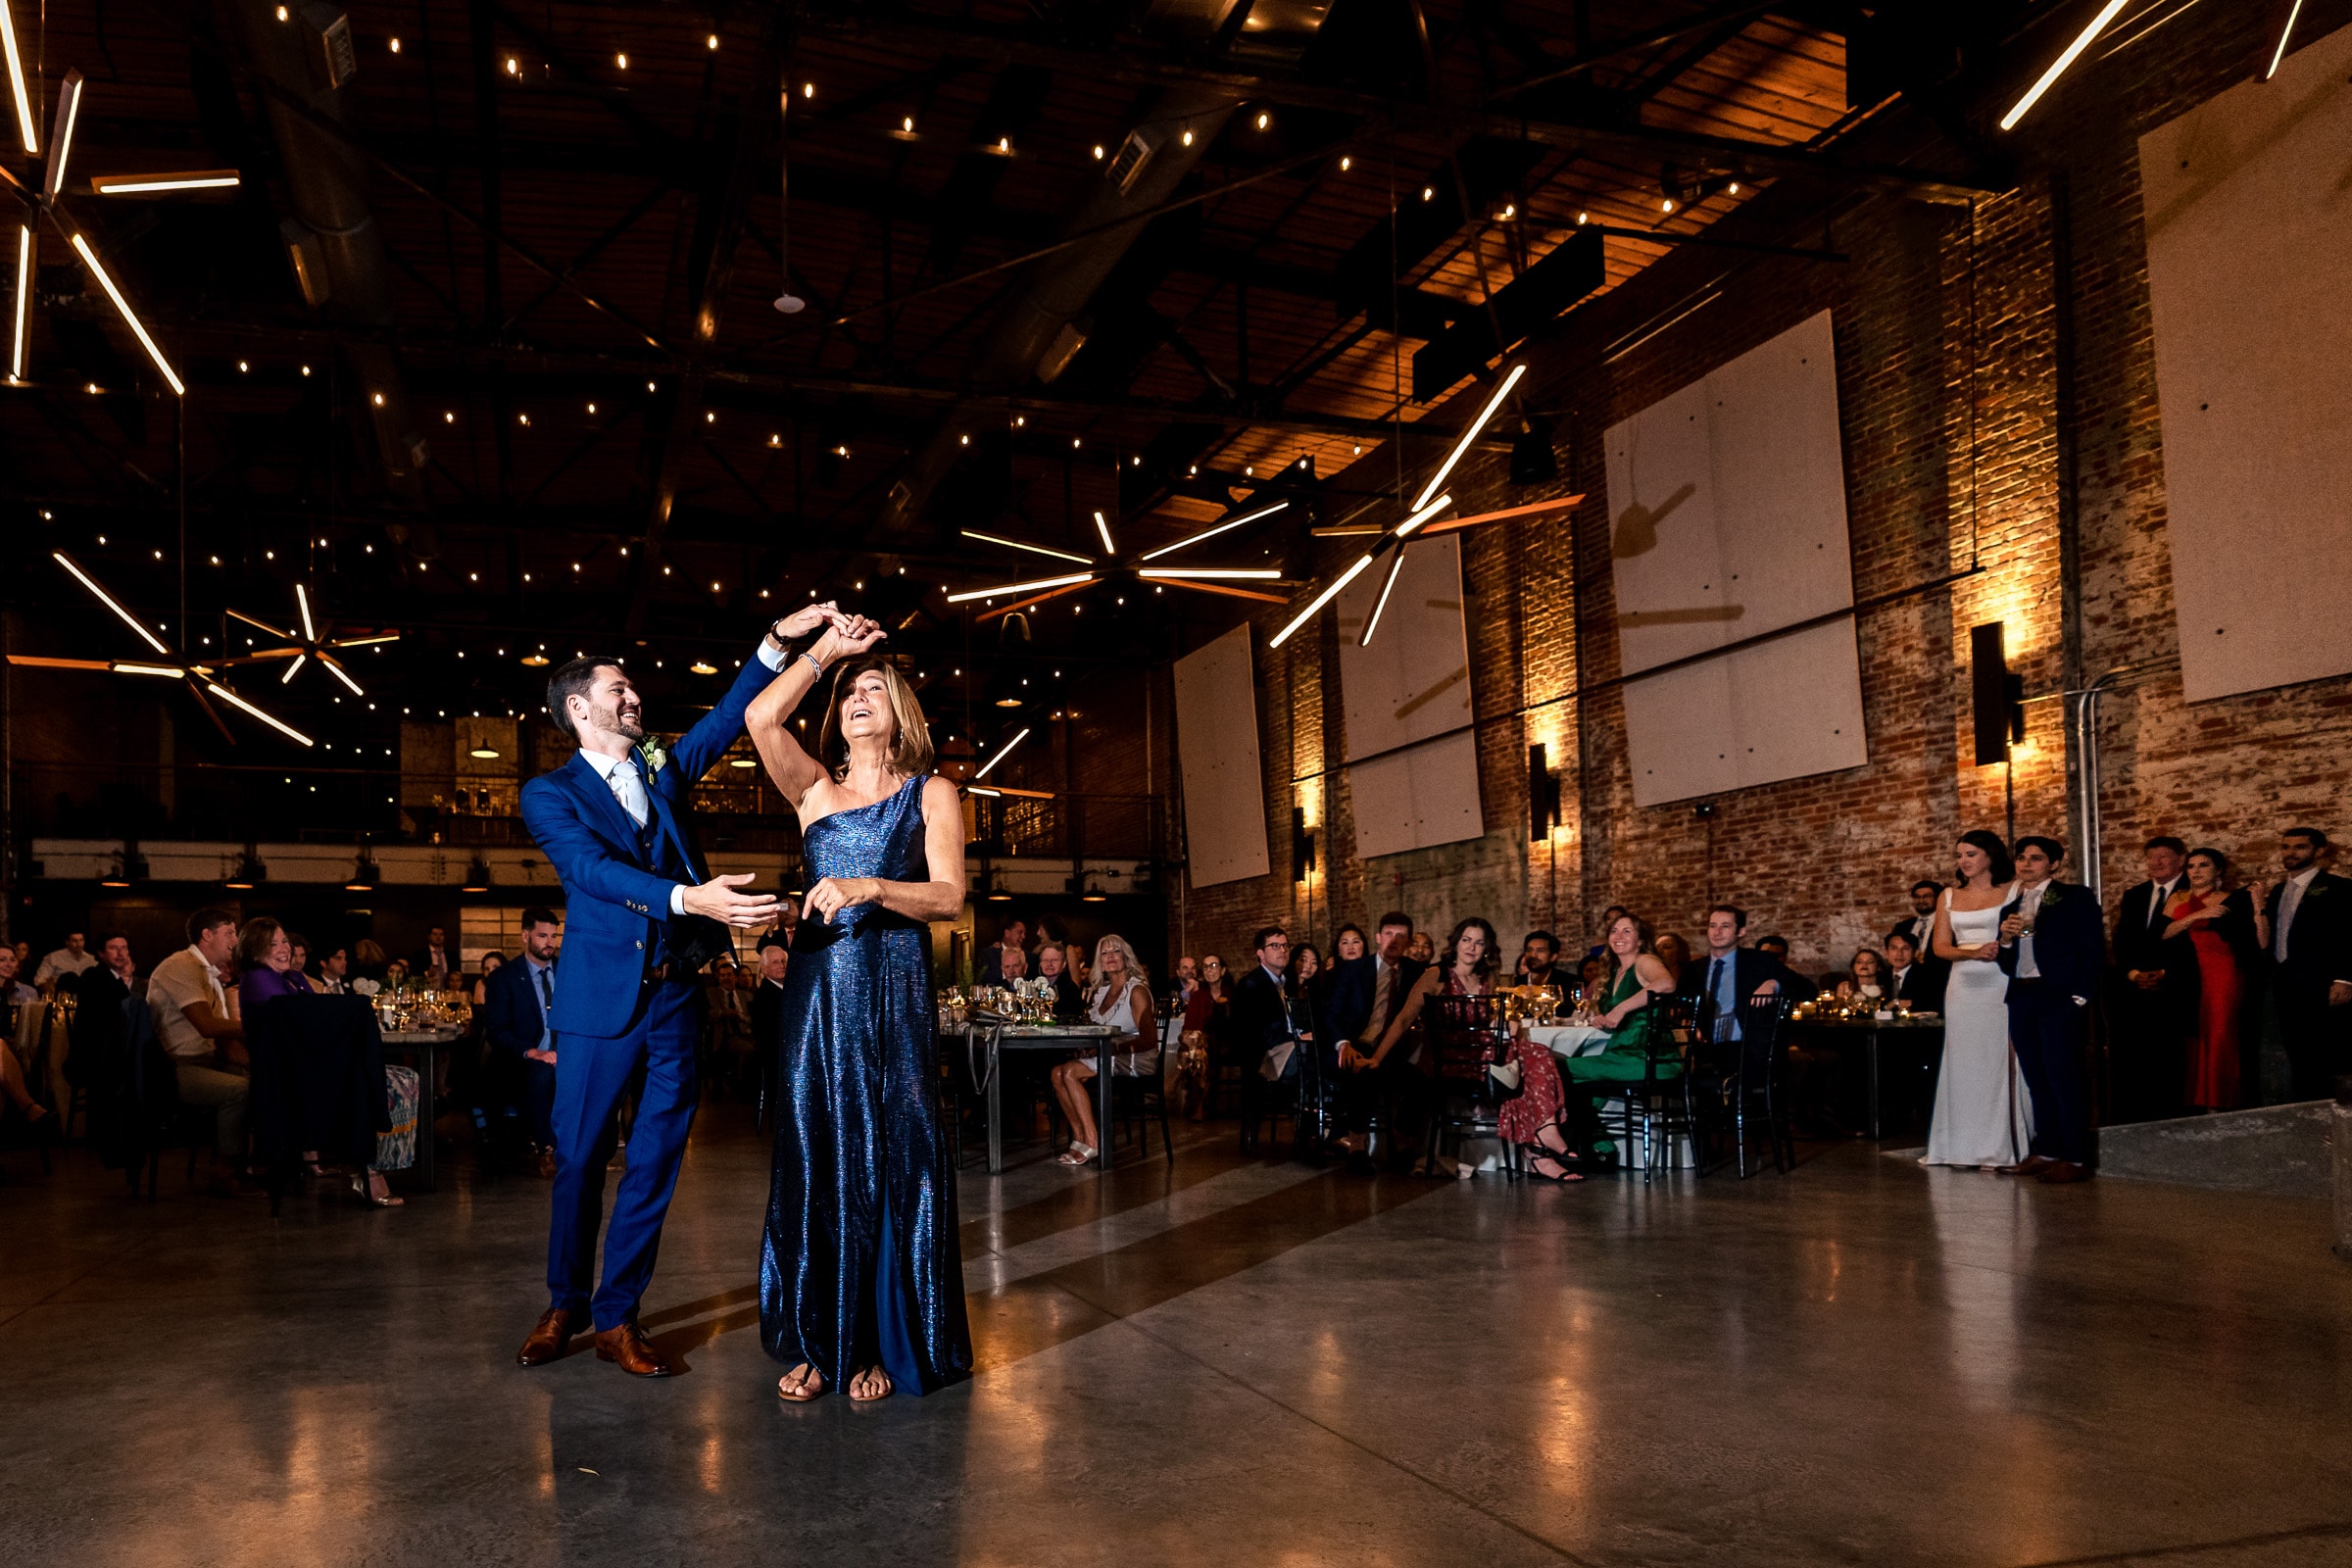 Cadillac Service Garage wedding reception | photos by Kivus & Camera